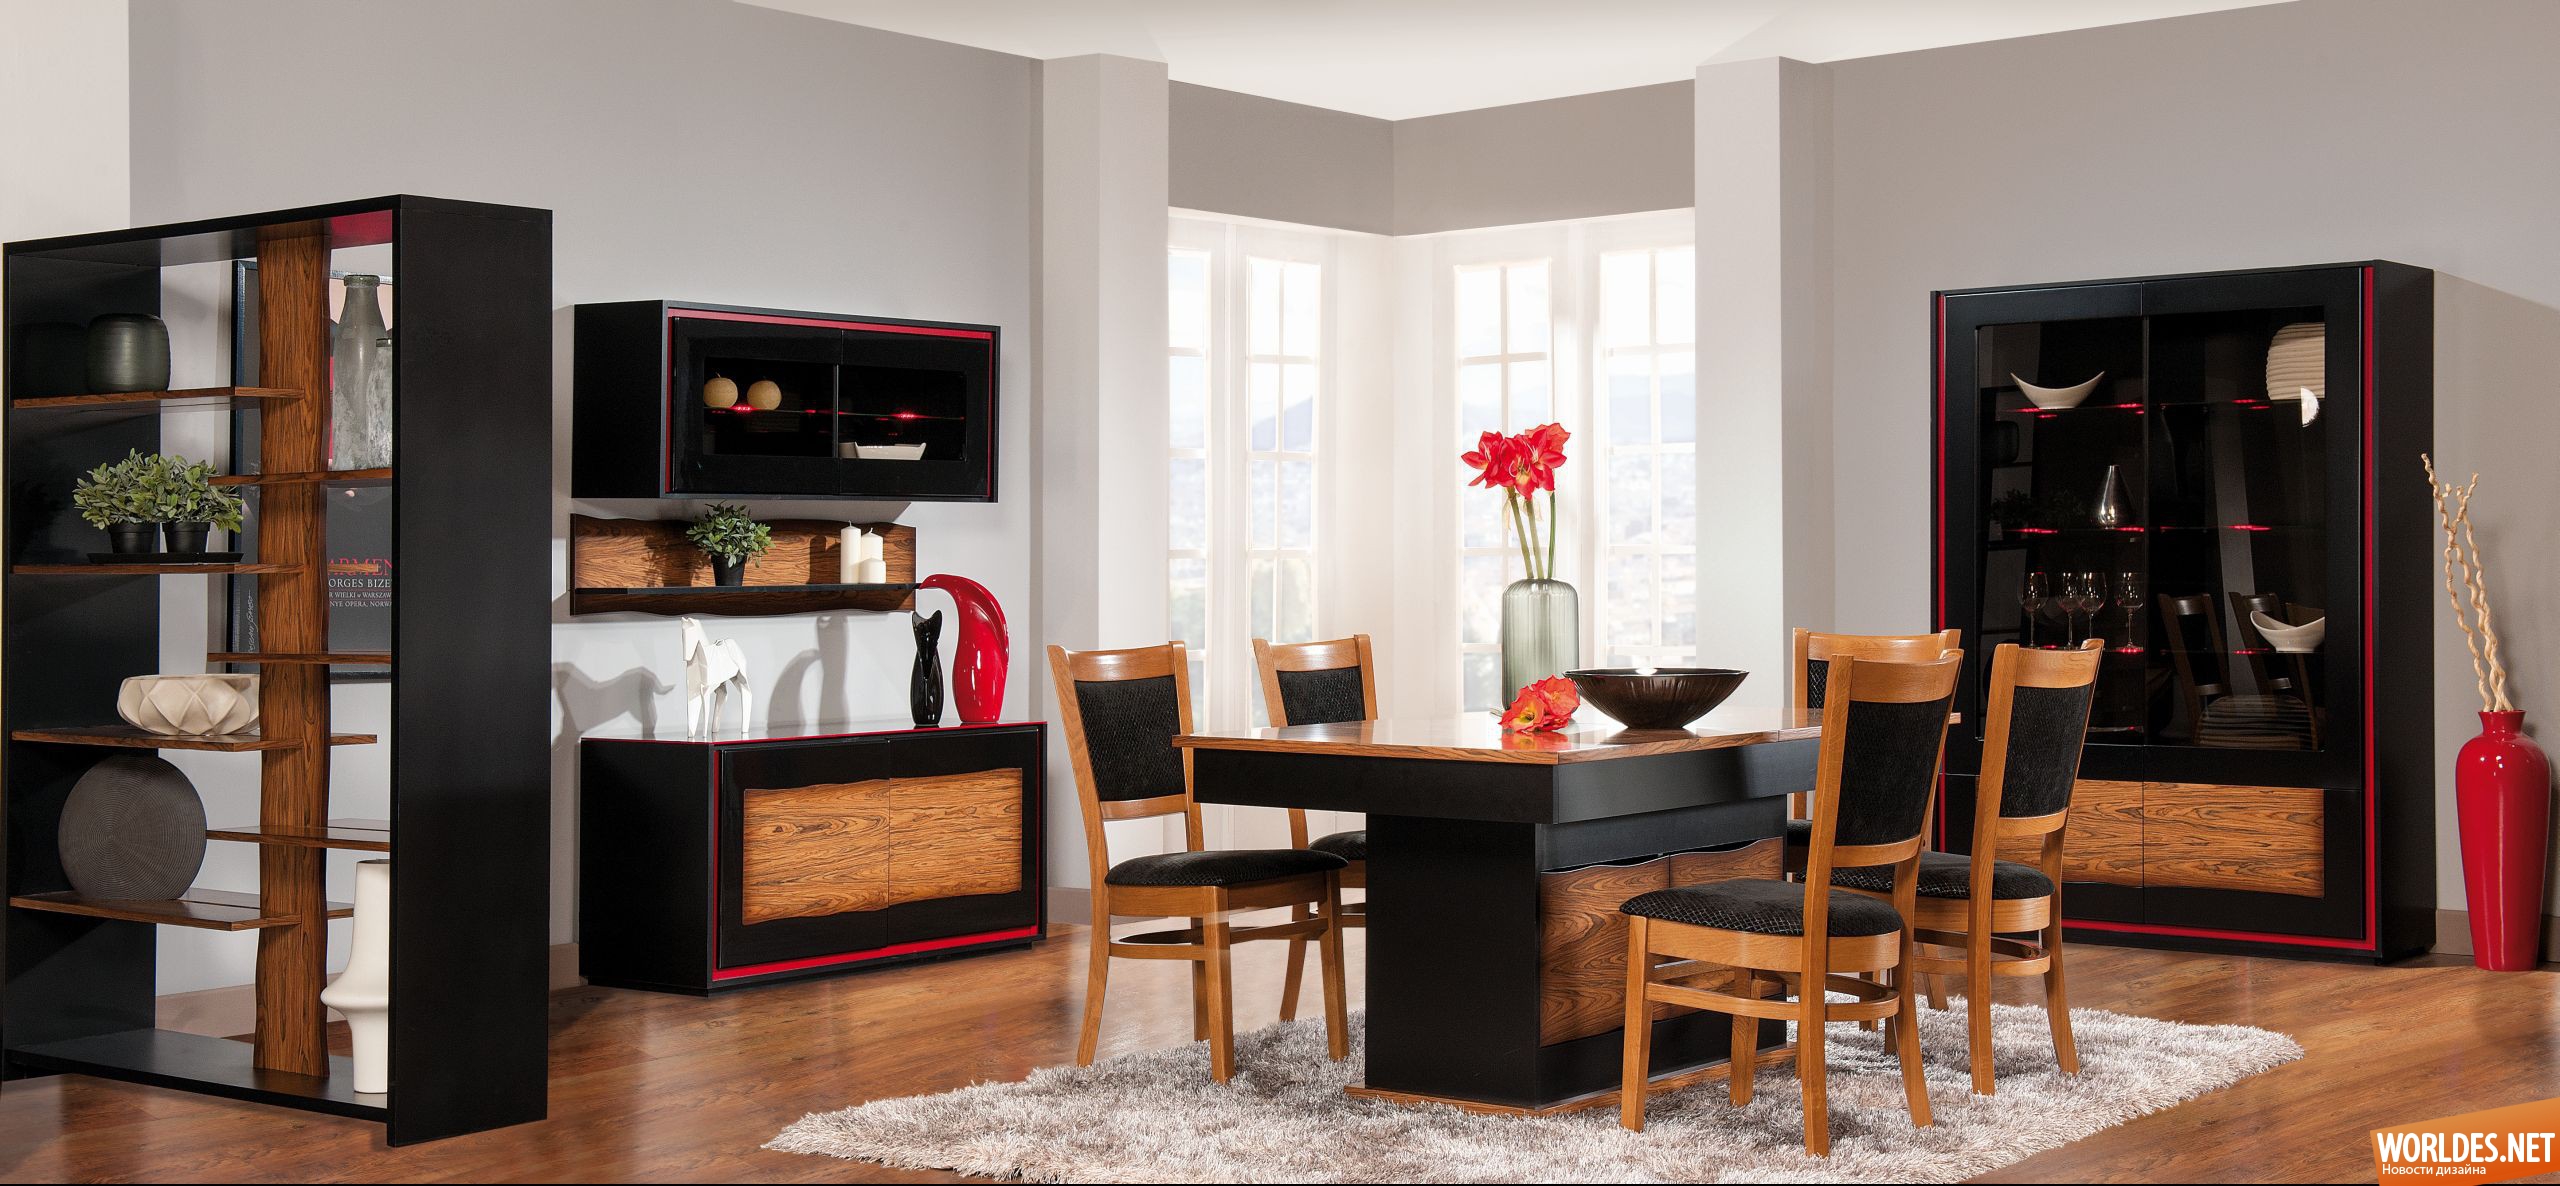 деревянная мебель для столовых, мебель для столовой, мебель для столовой комнаты, деревянная мебель, столовые, столовые комнаты